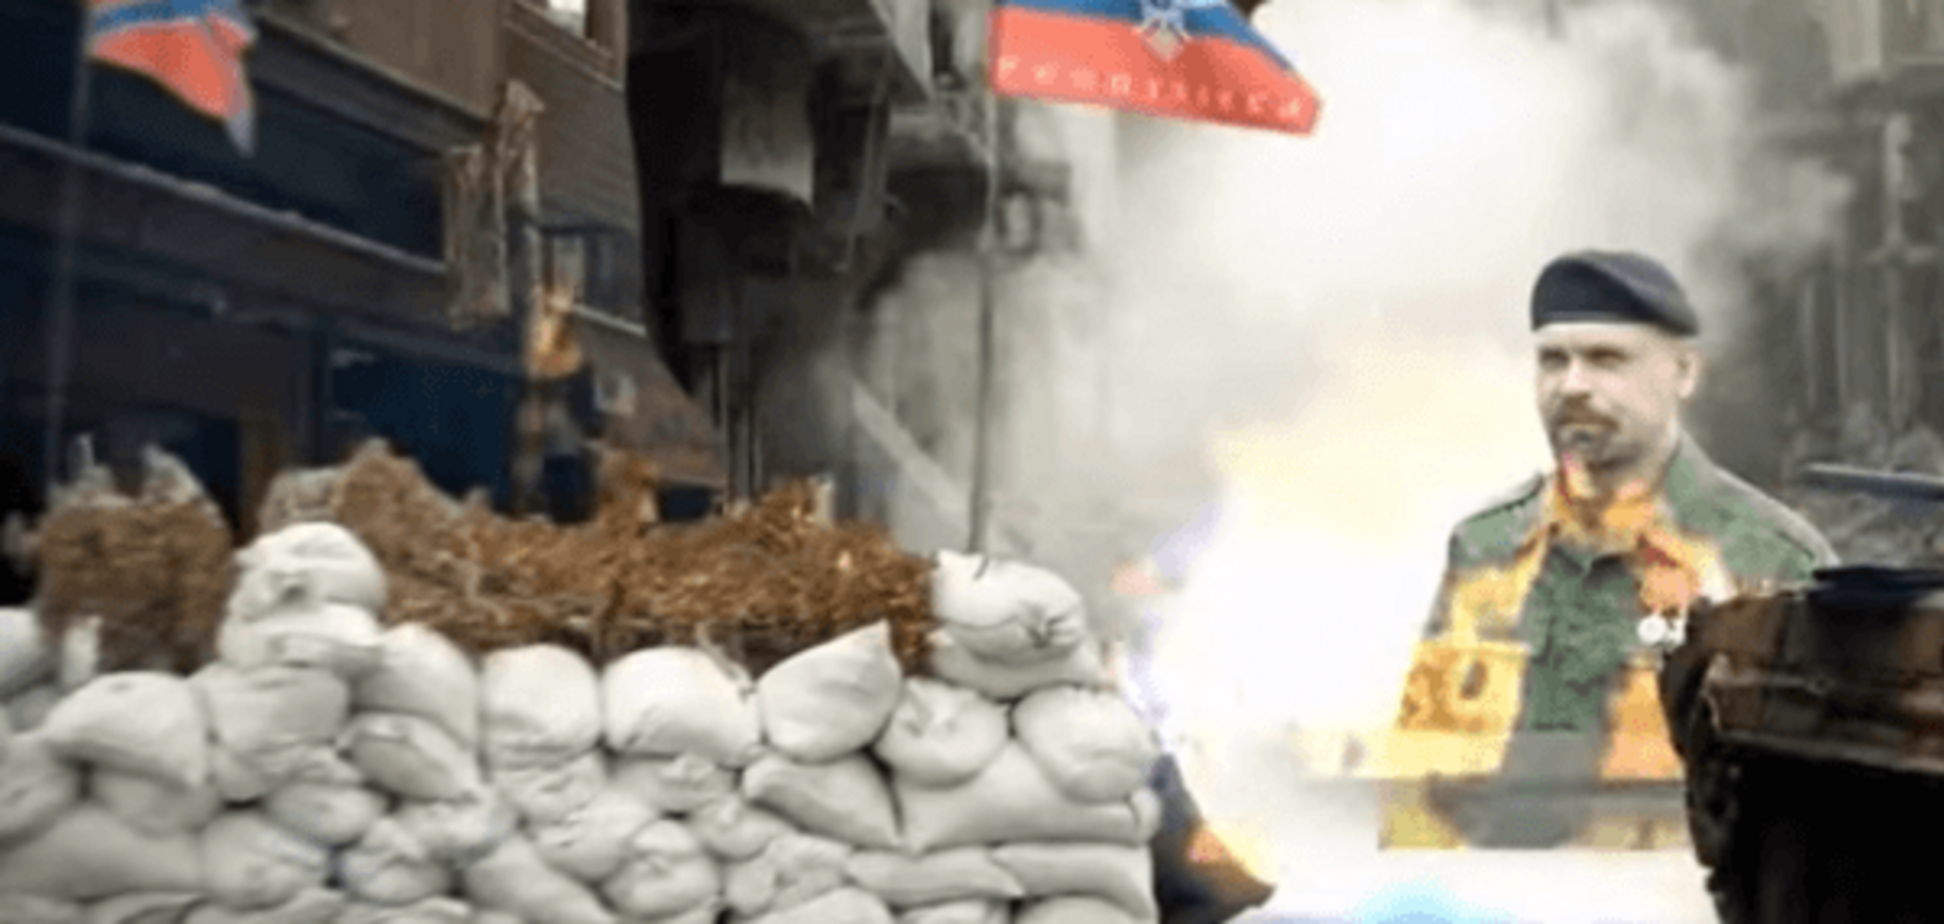 Ворог не спить: у мережі з'явилося відео про боротьбу з 'русскім міром' в Україні